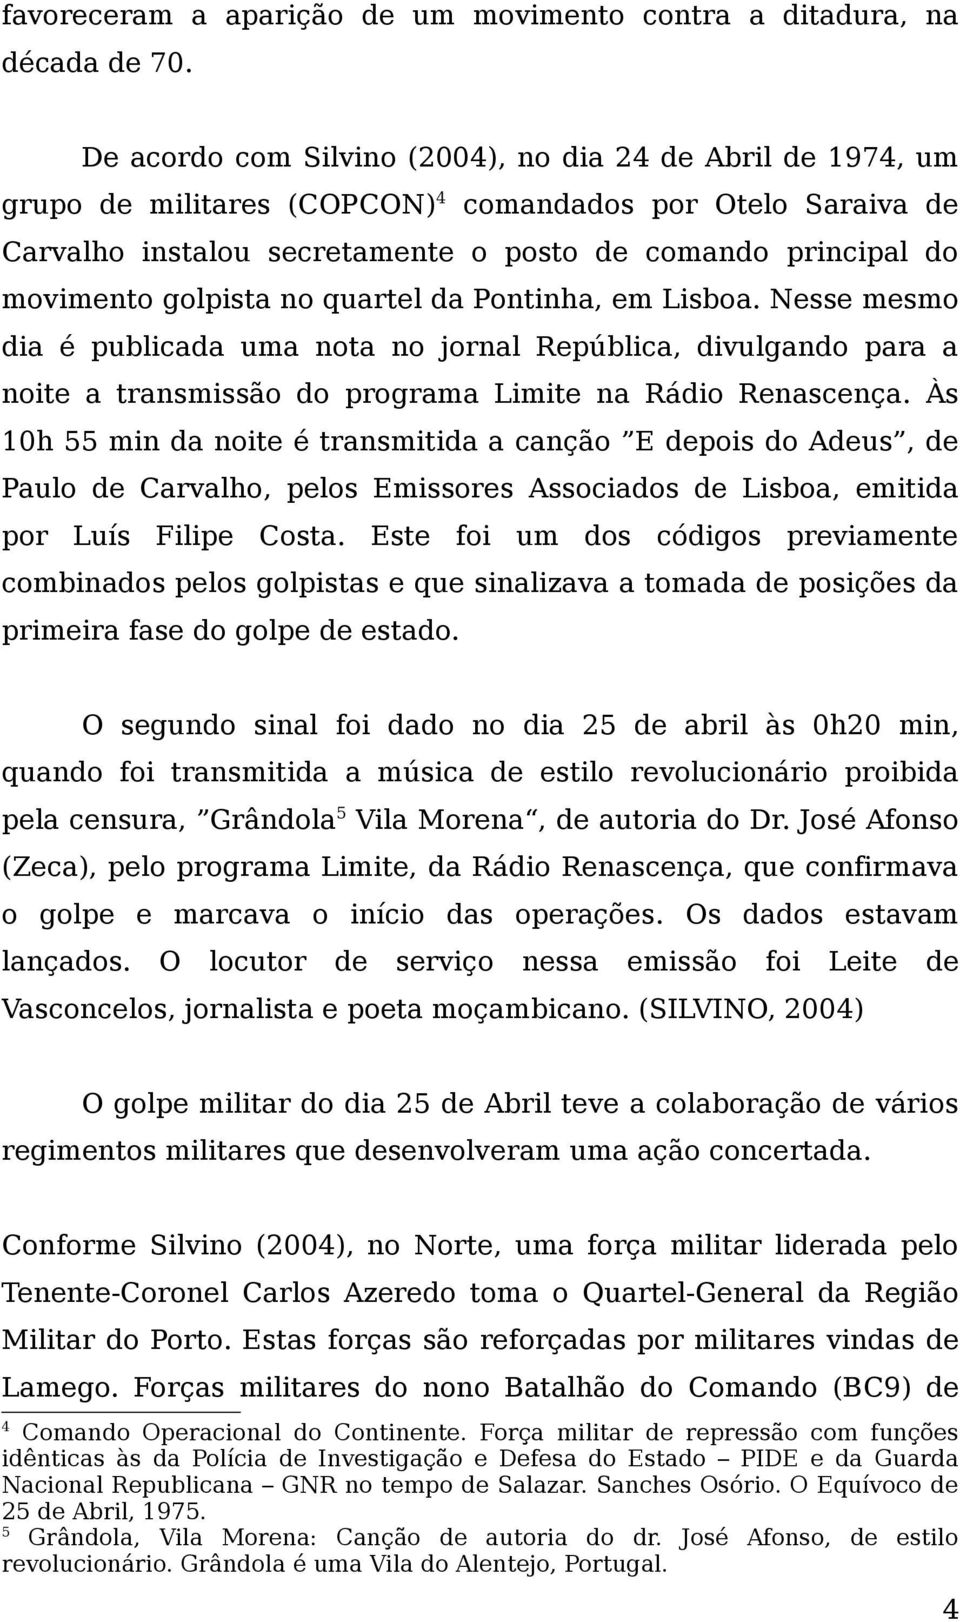 golpista no quartel da Pontinha, em Lisboa. Nesse mesmo dia é publicada uma nota no jornal República, divulgando para a noite a transmissão do programa Limite na Rádio Renascença.